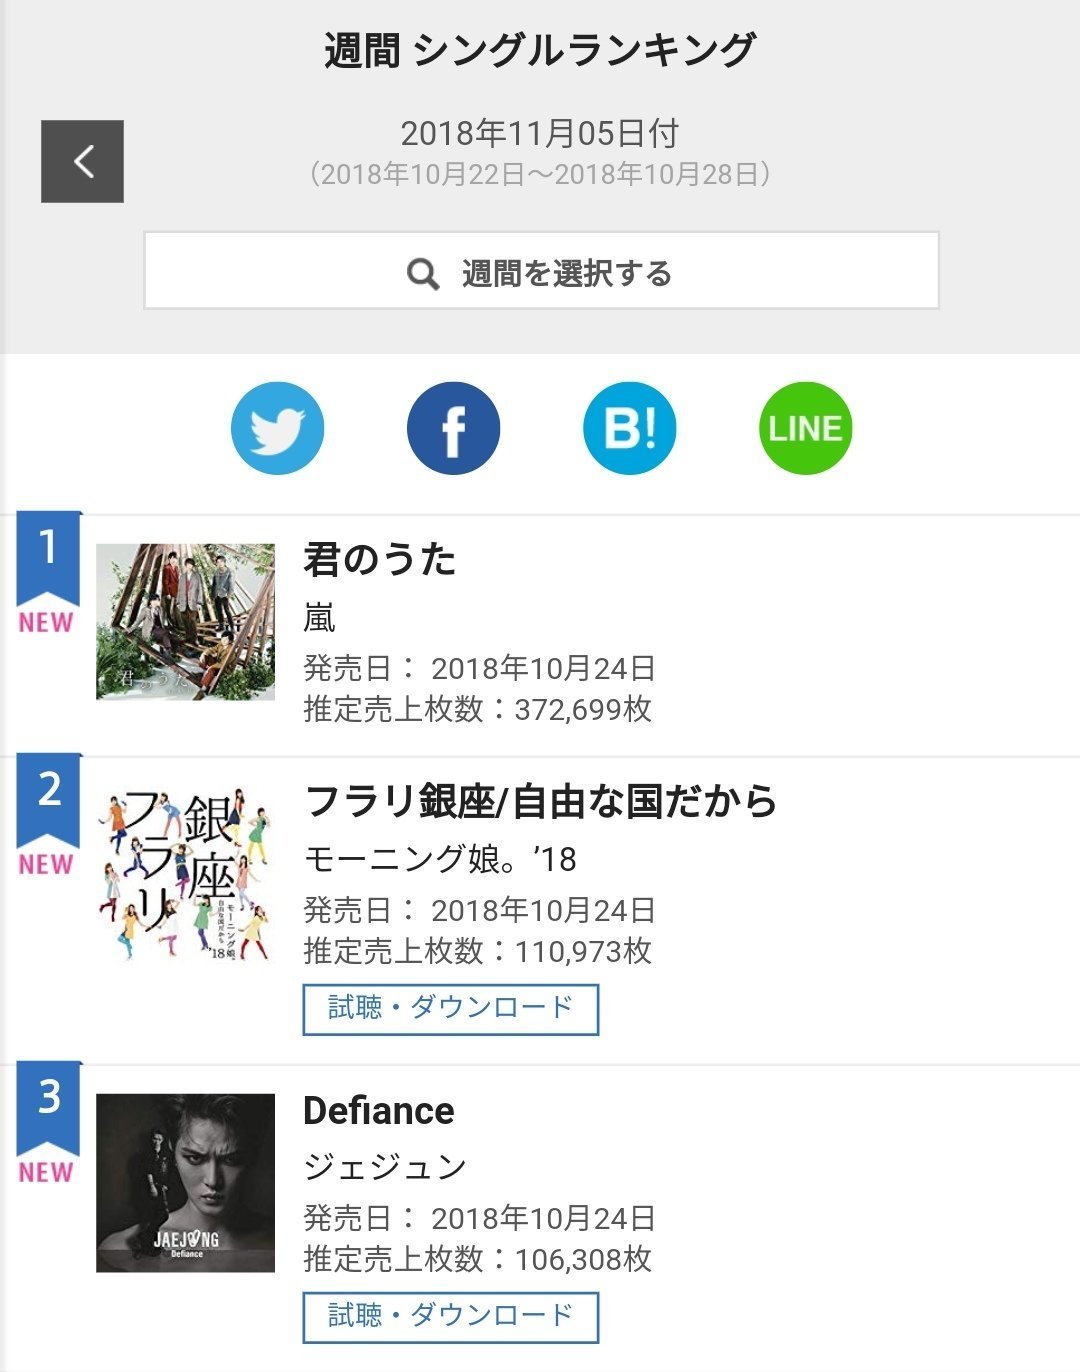 オリコン 18年11月05日付 週間シングルランキング ジェジュン Defiance 推定売上枚数106 308枚で3位 ジェジュン 情報ブログ